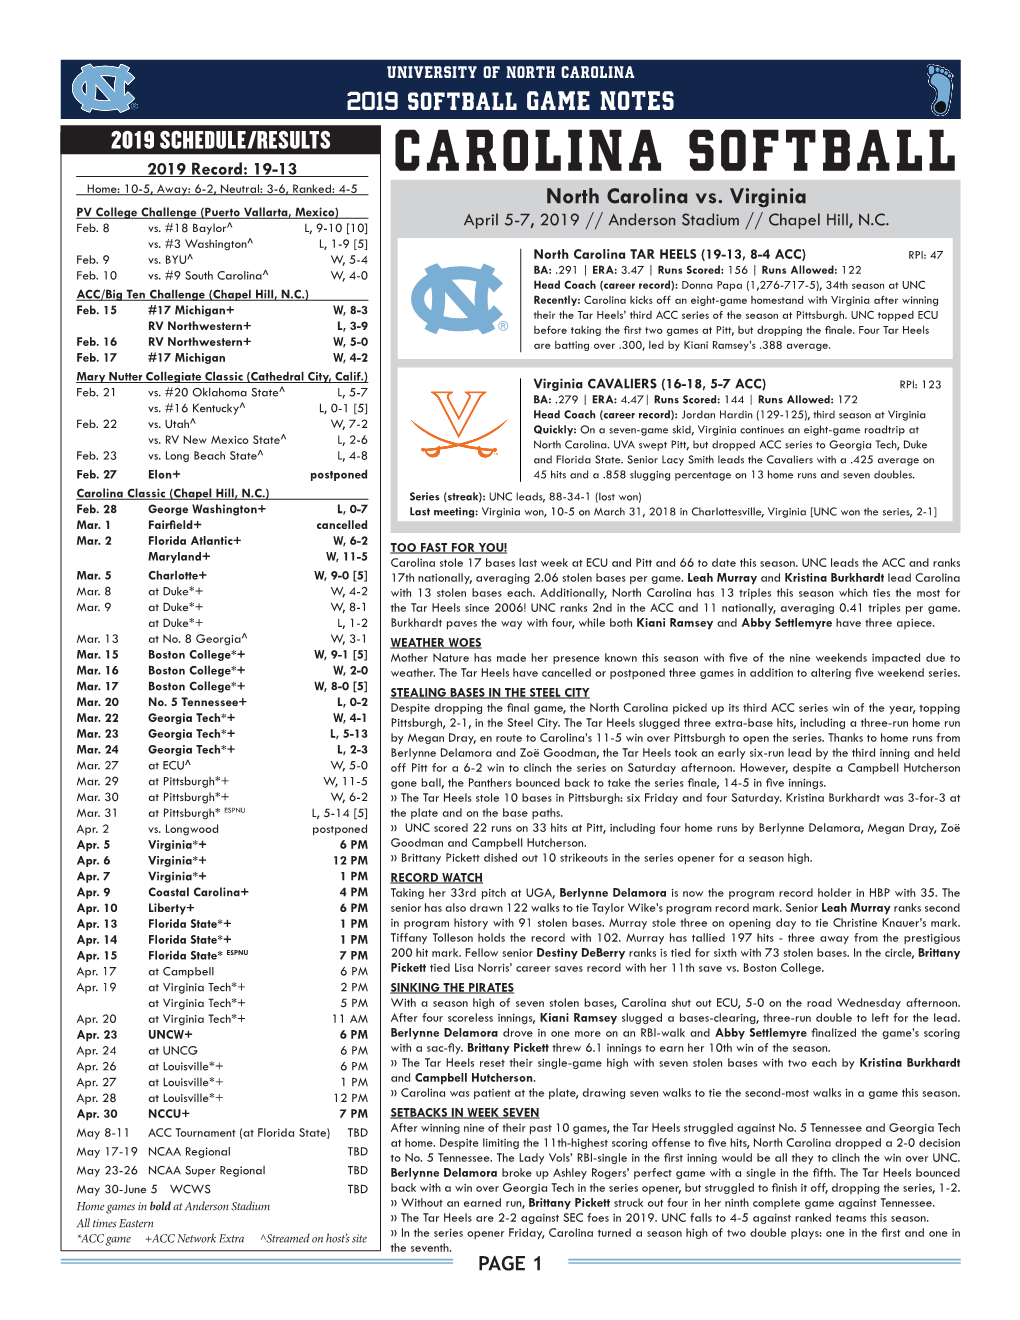 Carolina Softball Home: 10-5, Away: 6-2, Neutral: 3-6, Ranked: 4-5 North Carolina Vs